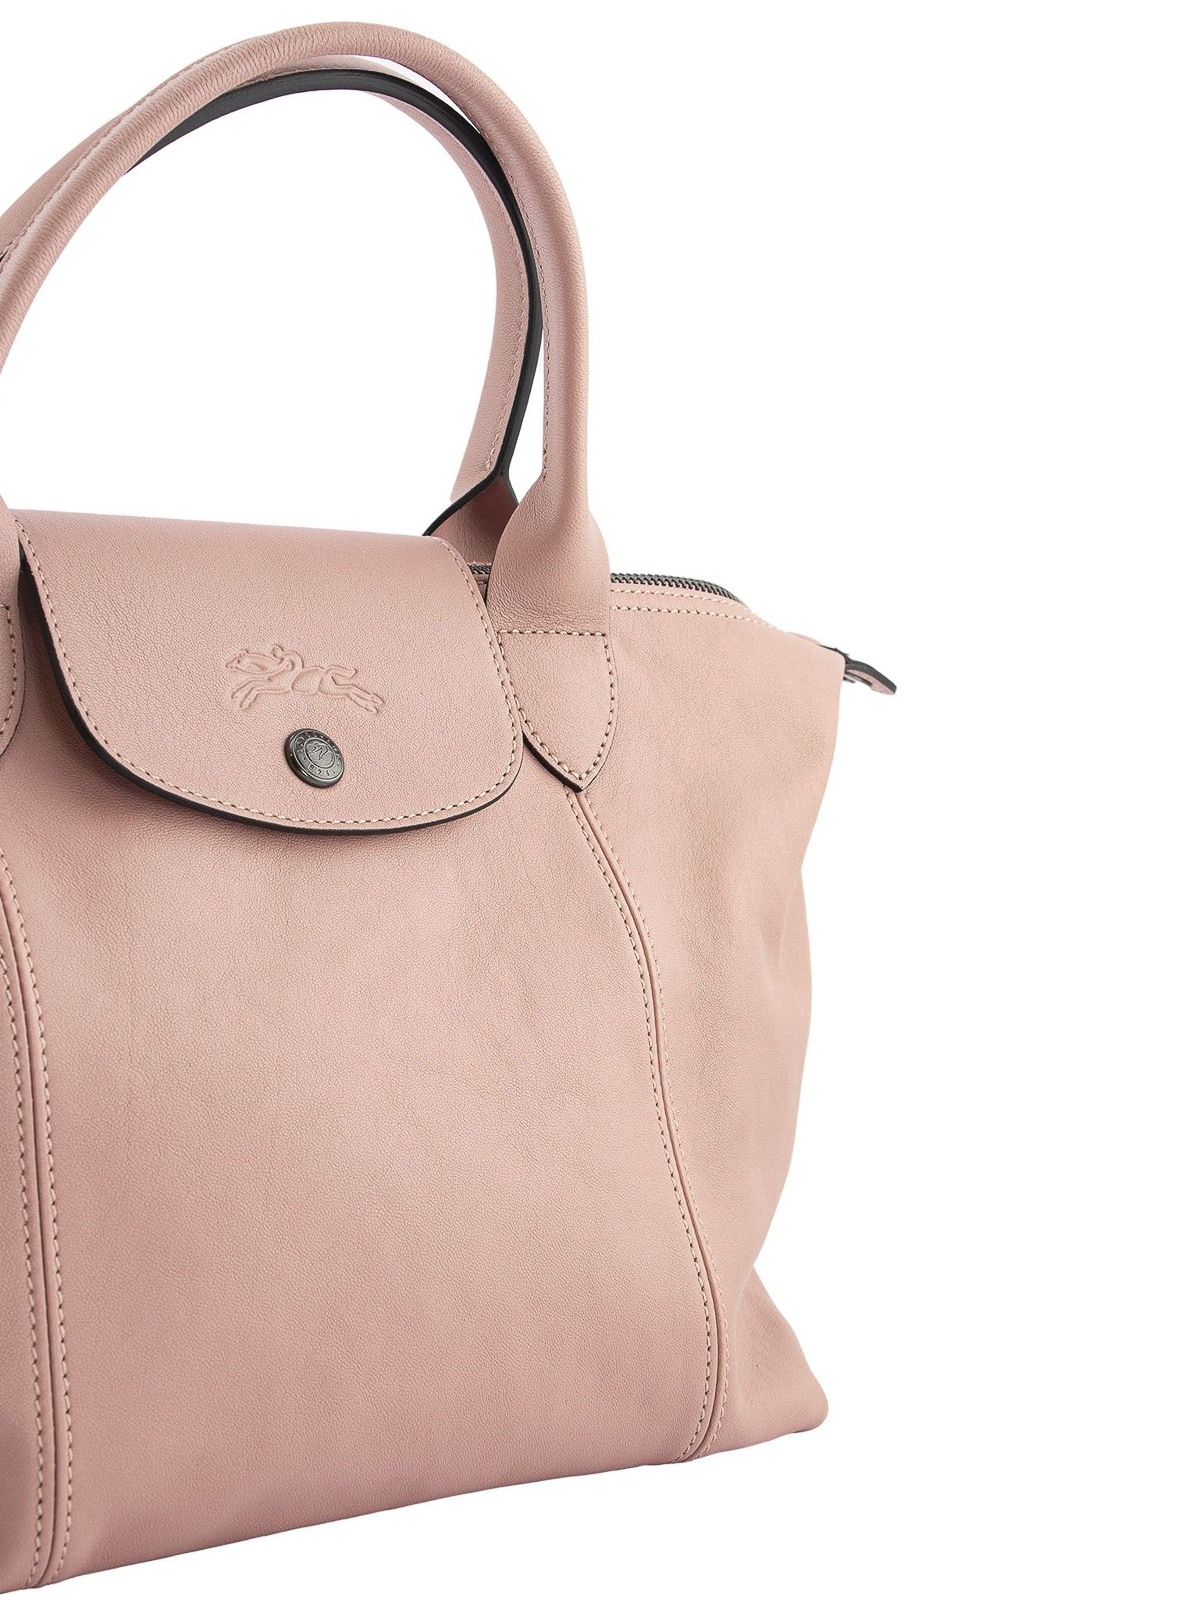 Shoulder bags Longchamp - Le Pliage Cuir small leather bag